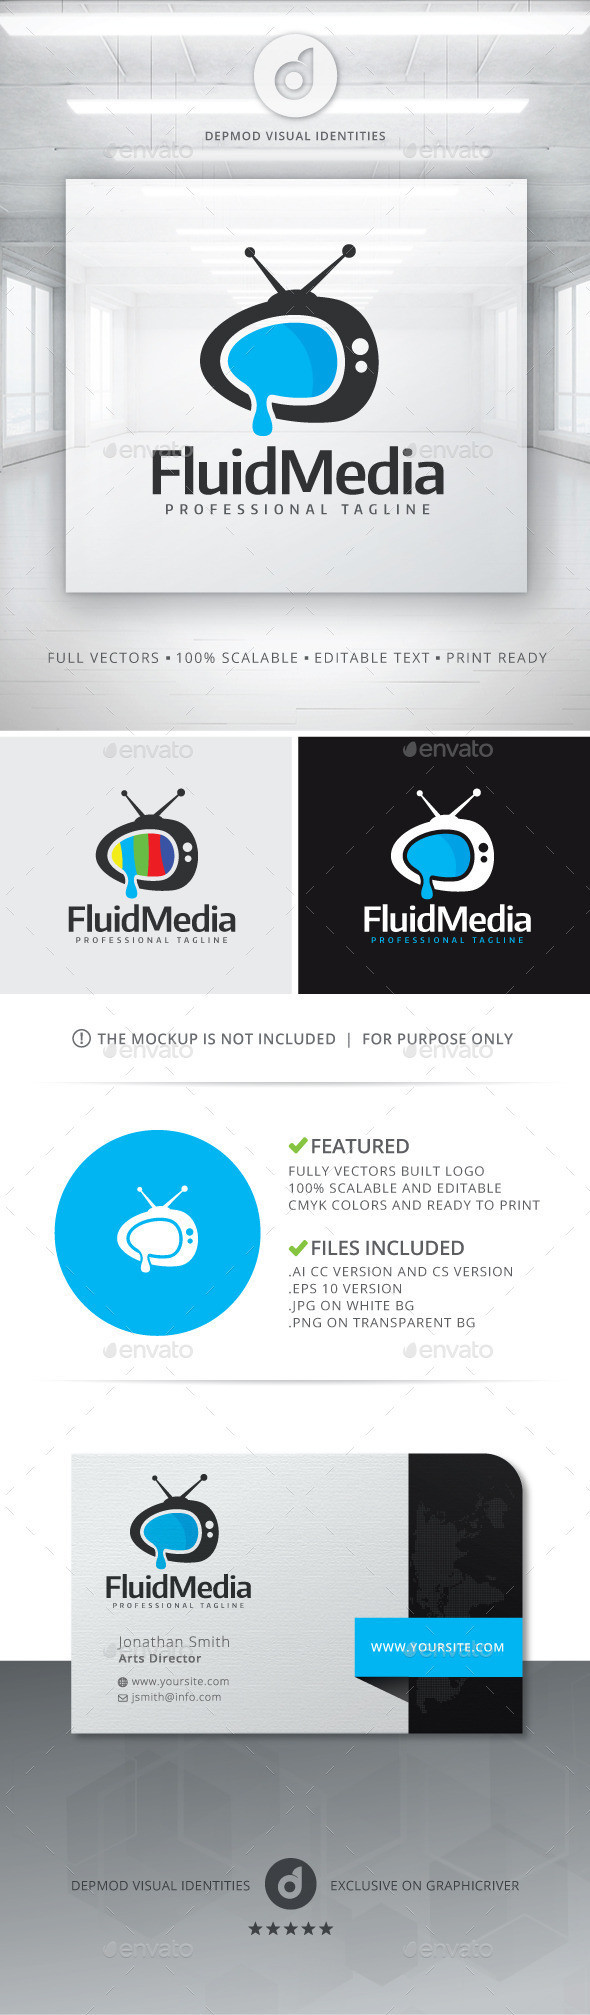 Fluid media logo